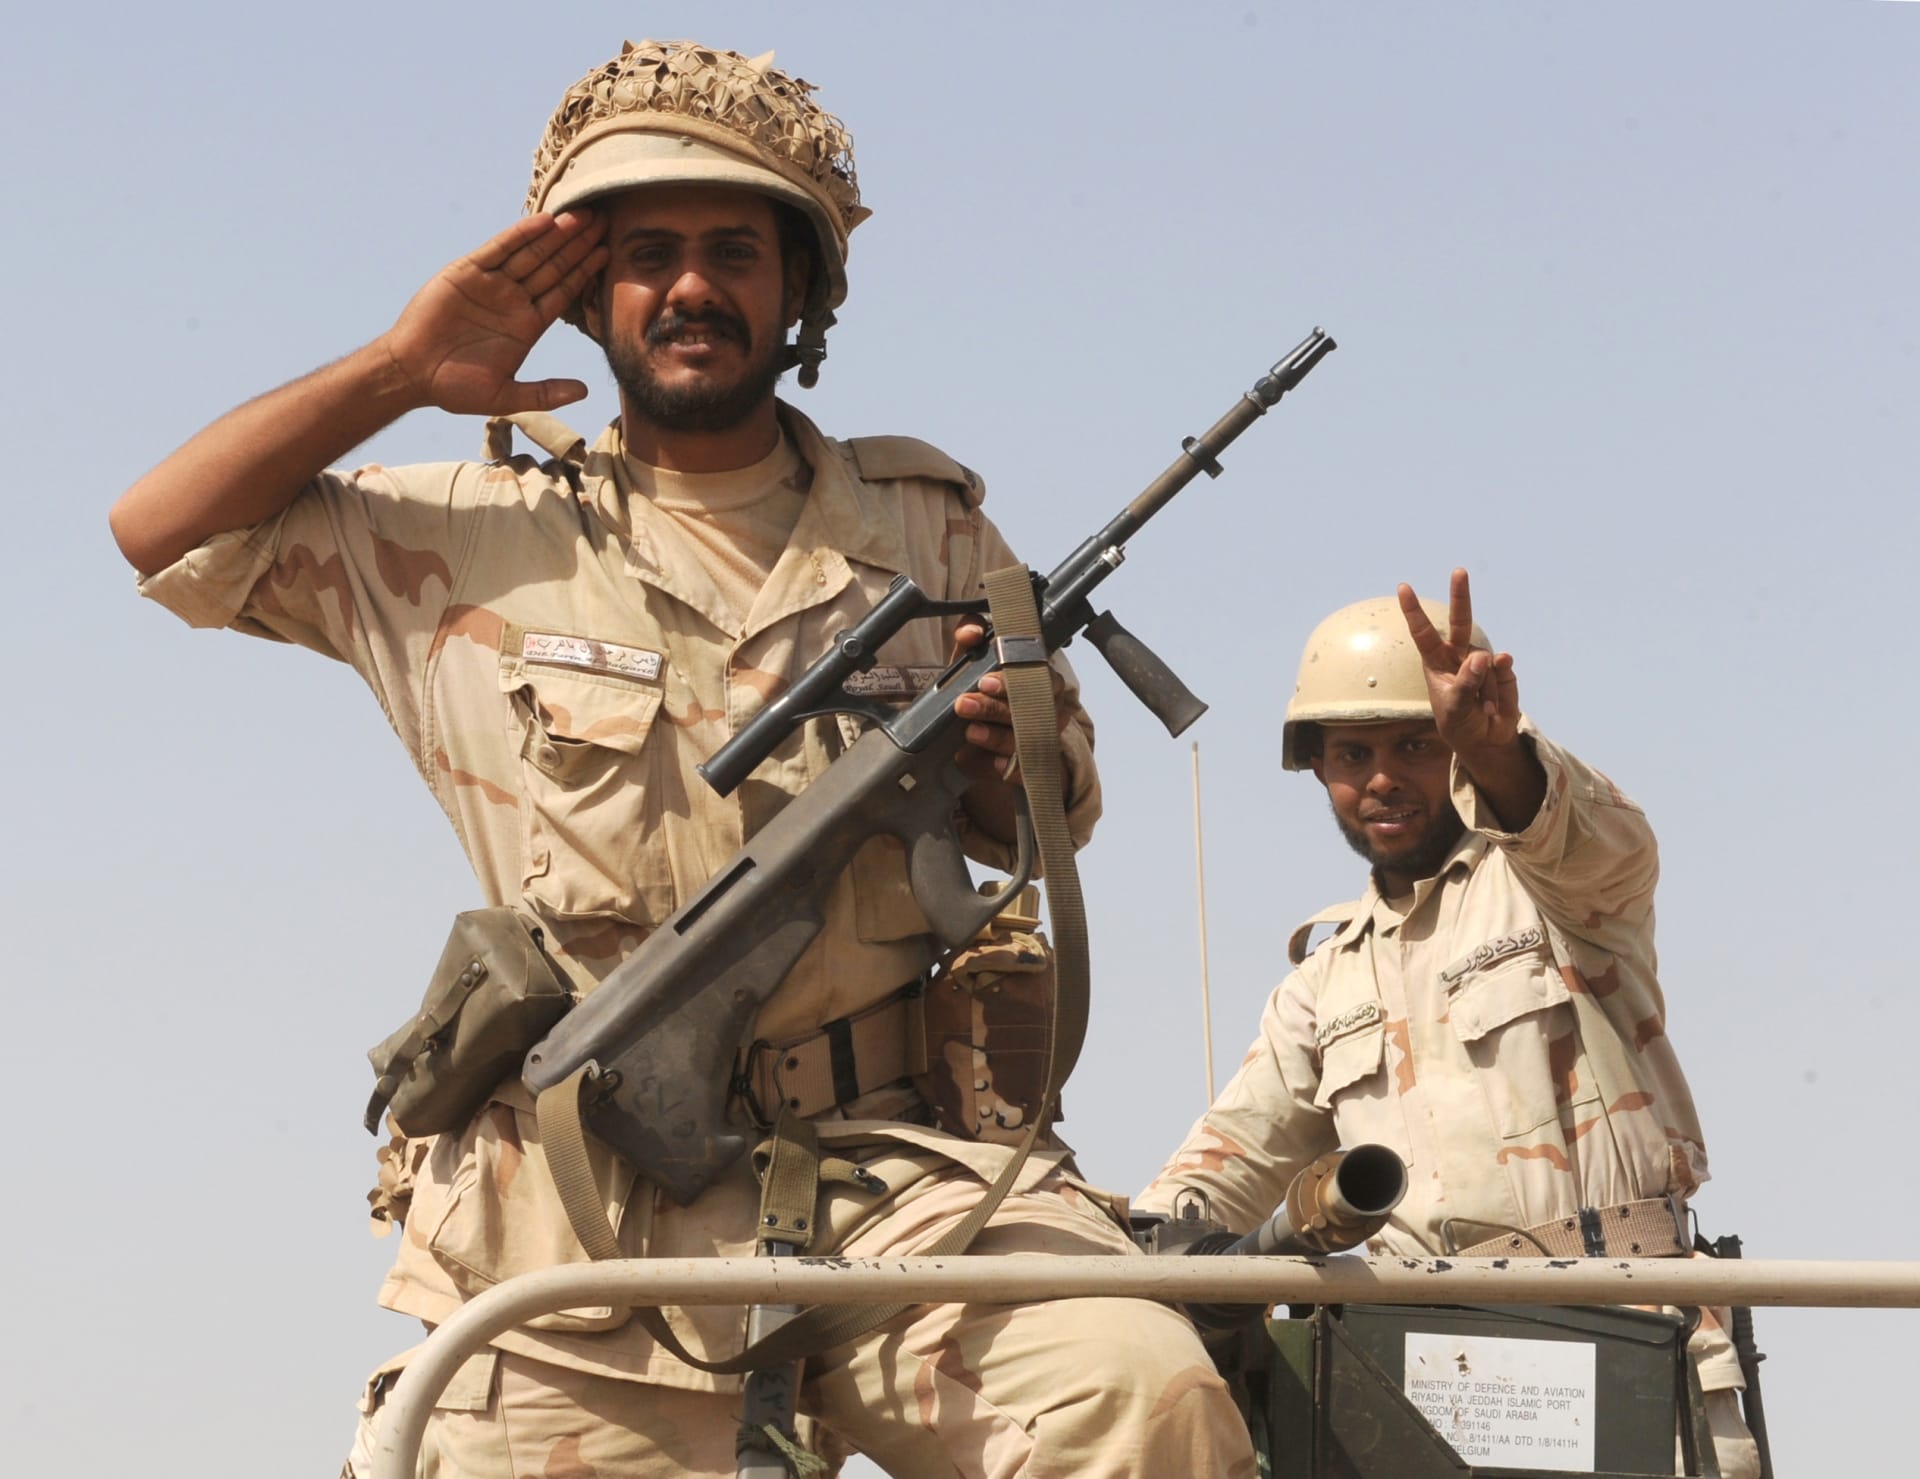 العاهل السعودي للقوات المسلحة: حطمتم همم أعوان الشيطان من الفئات الضالة